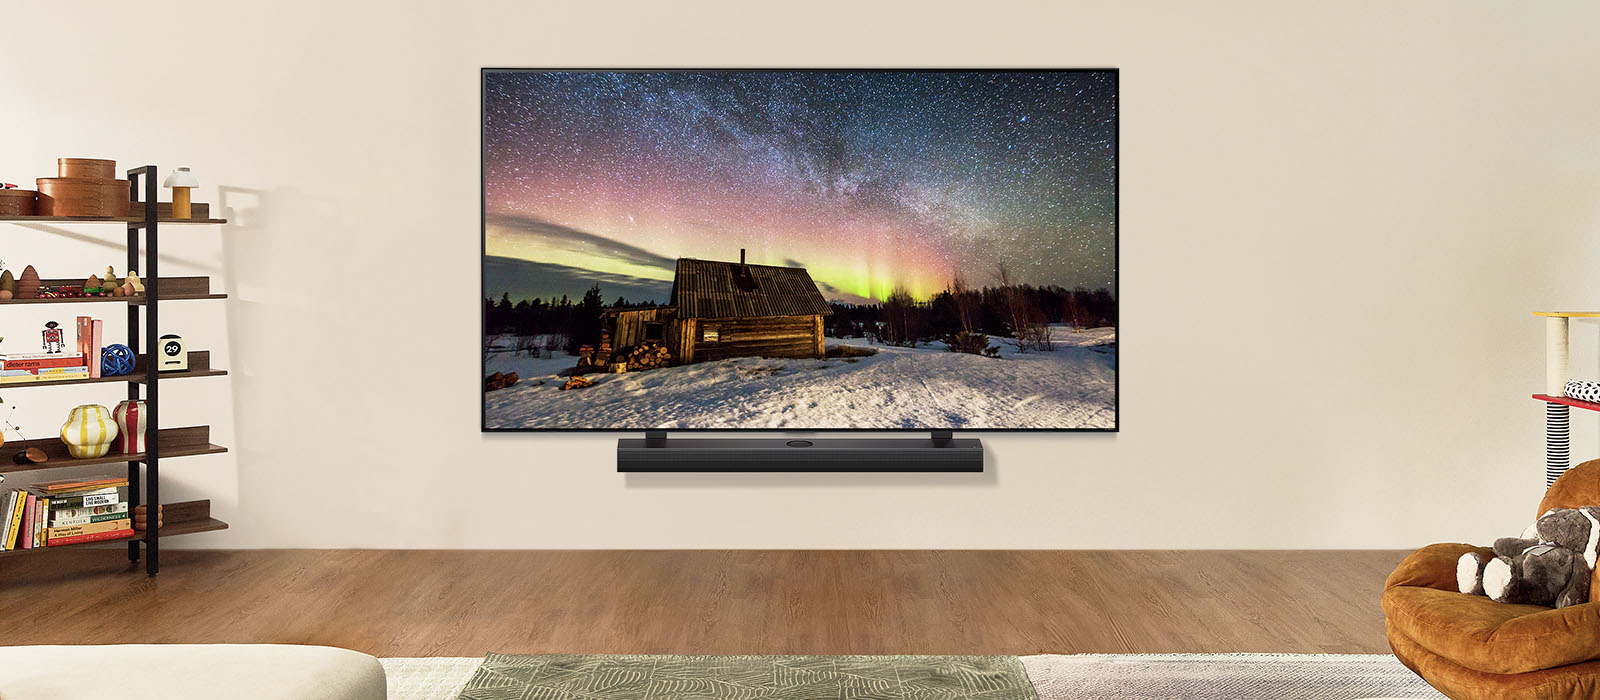 LG TV och LG Soundbar i ett modernt vardagsrum på dagtid. Skärmen visar norrsken med den idealiska ljusstyrkan.